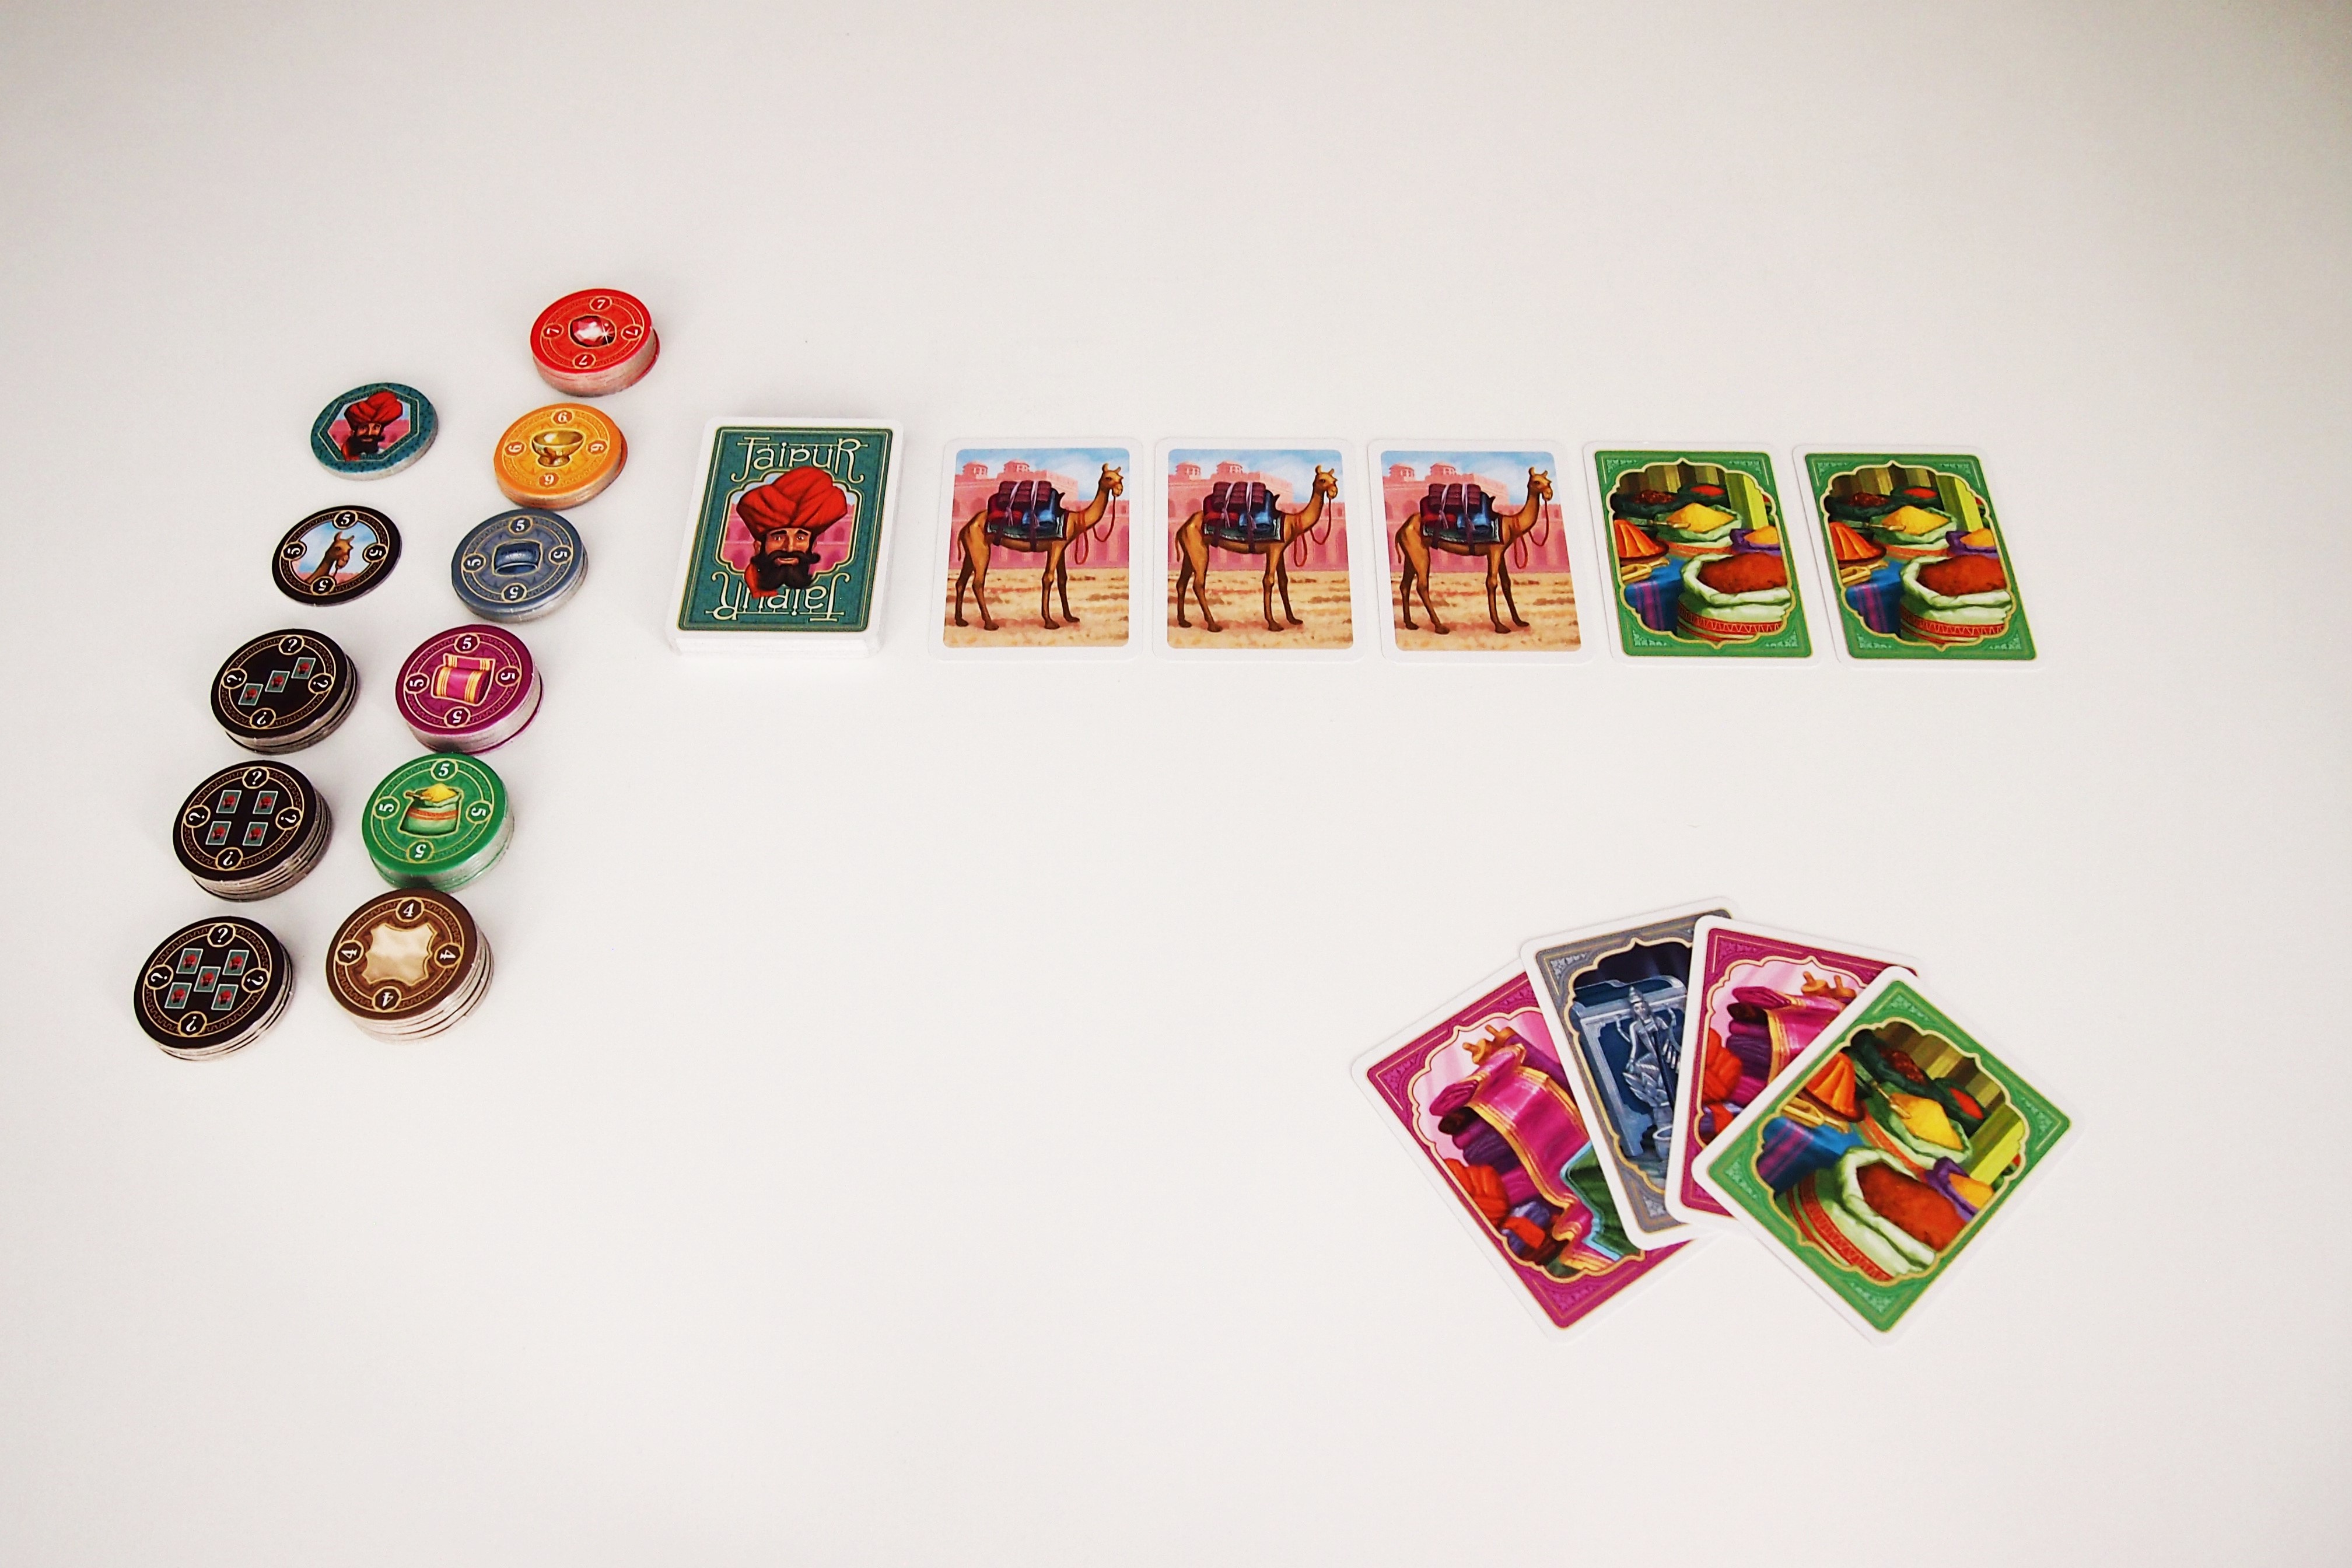 En su turno, un jugador puede coger cartas del centro de la mesa, con tres posibles opciones. La primera de ellas es coger una carta y sustituirla por una del mazo. 